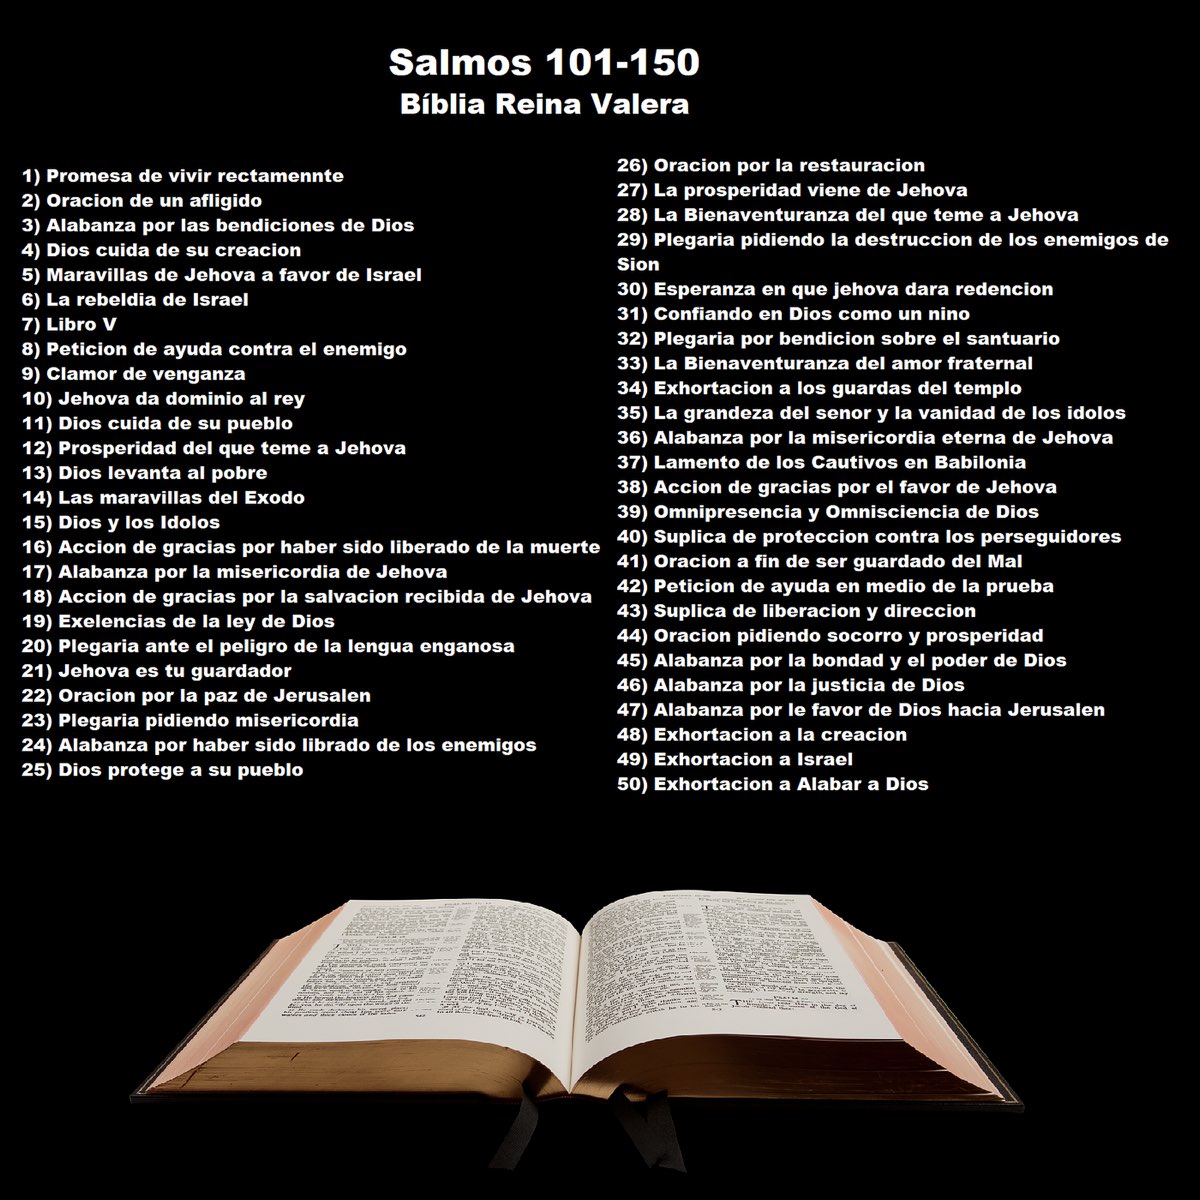 Salmos 101-150 - Album di Bíblia Reina Valera - Apple Music